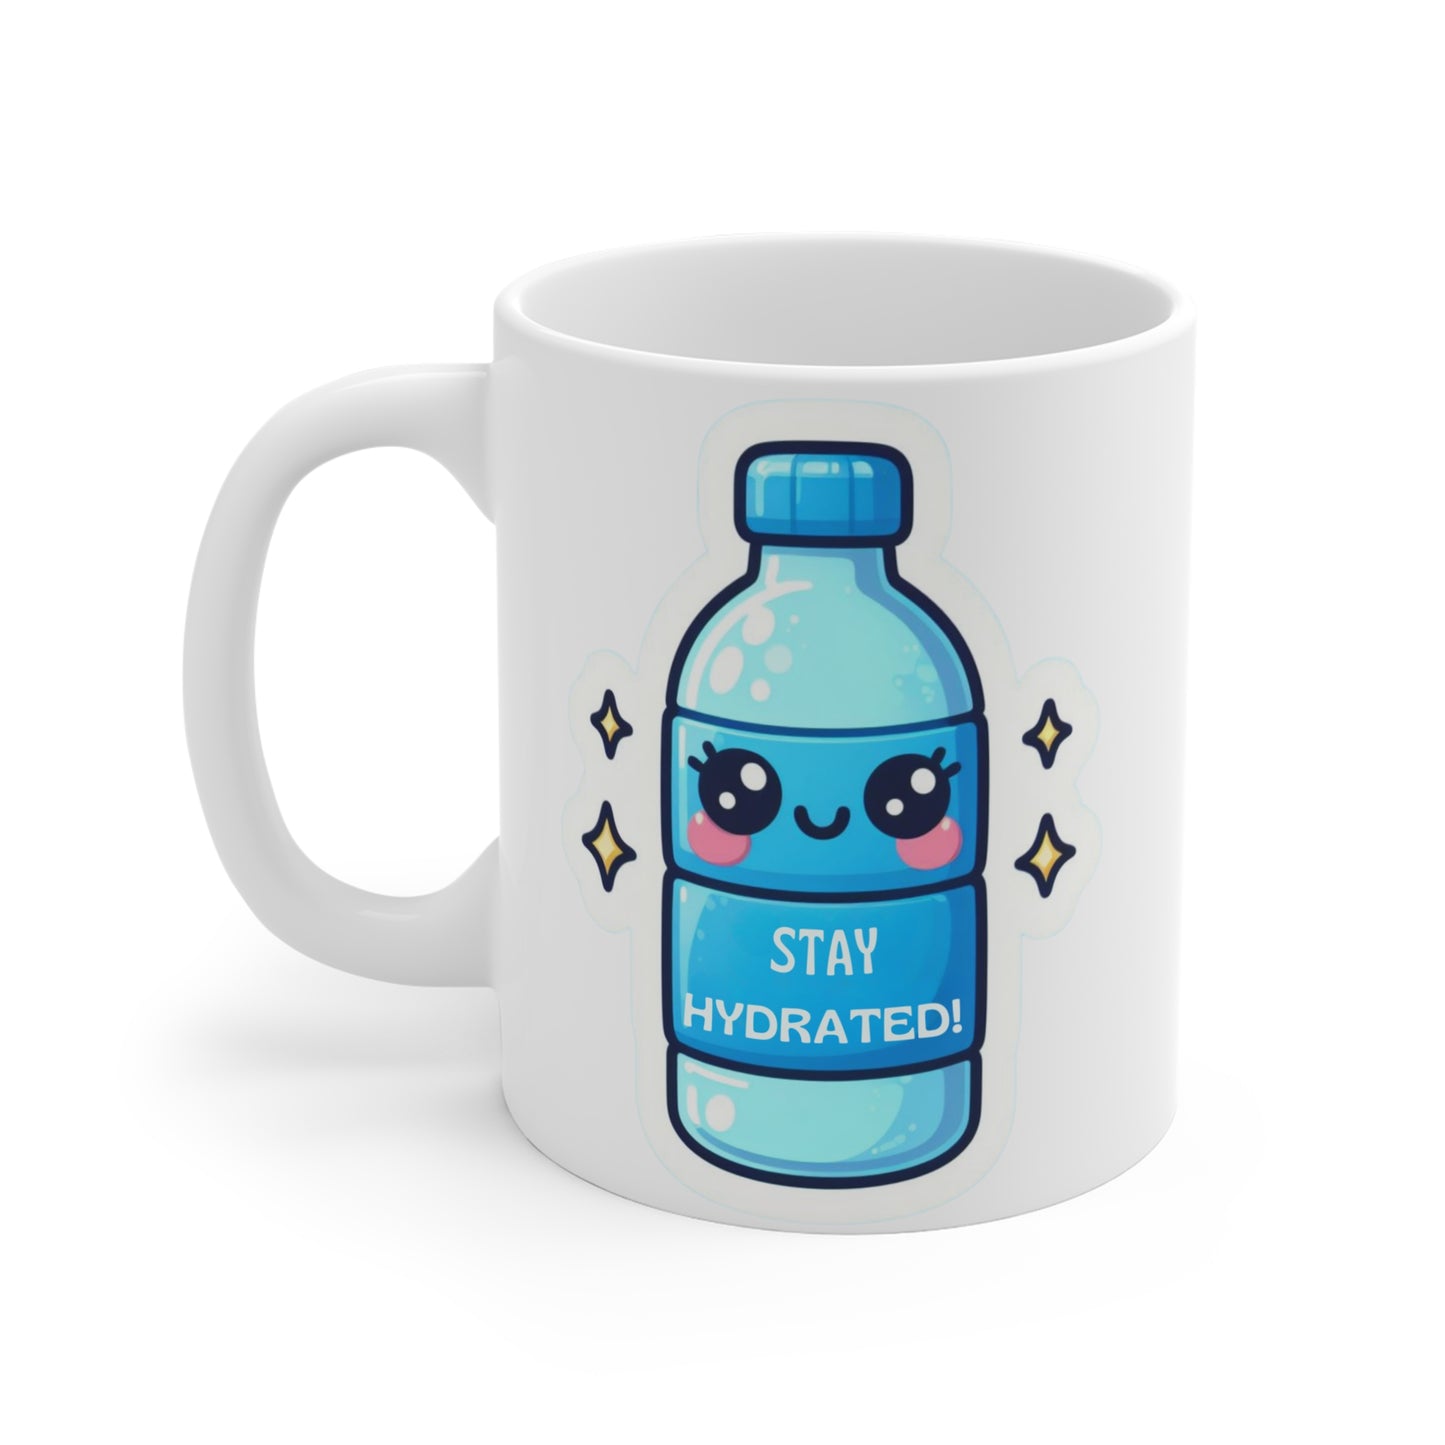 Stay hydrated Mug 11oz